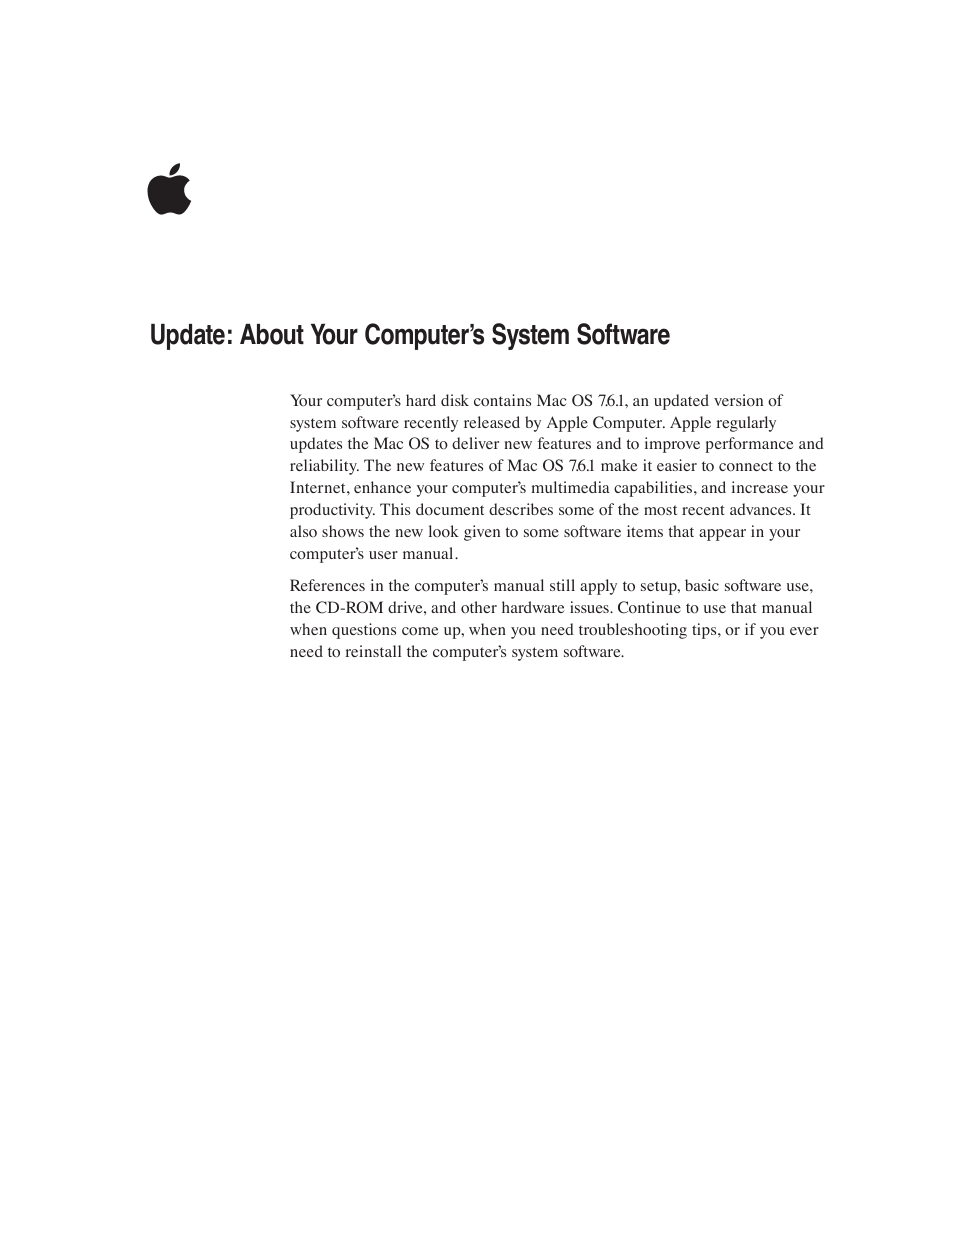 MAC OS 7.6.1